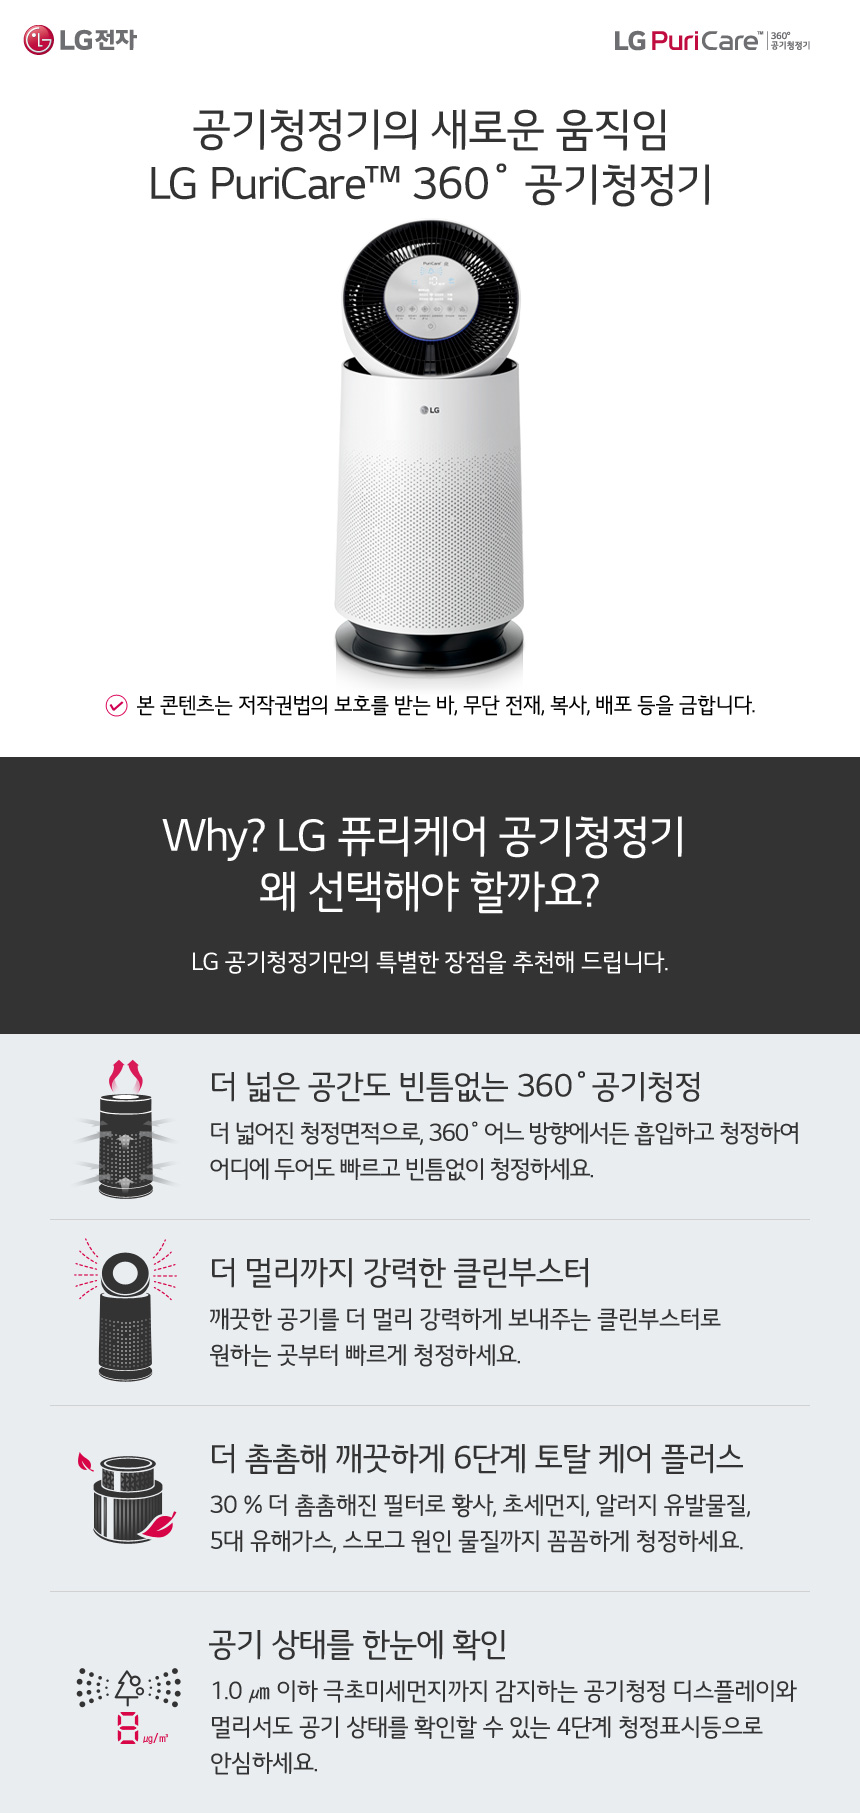 Why LG